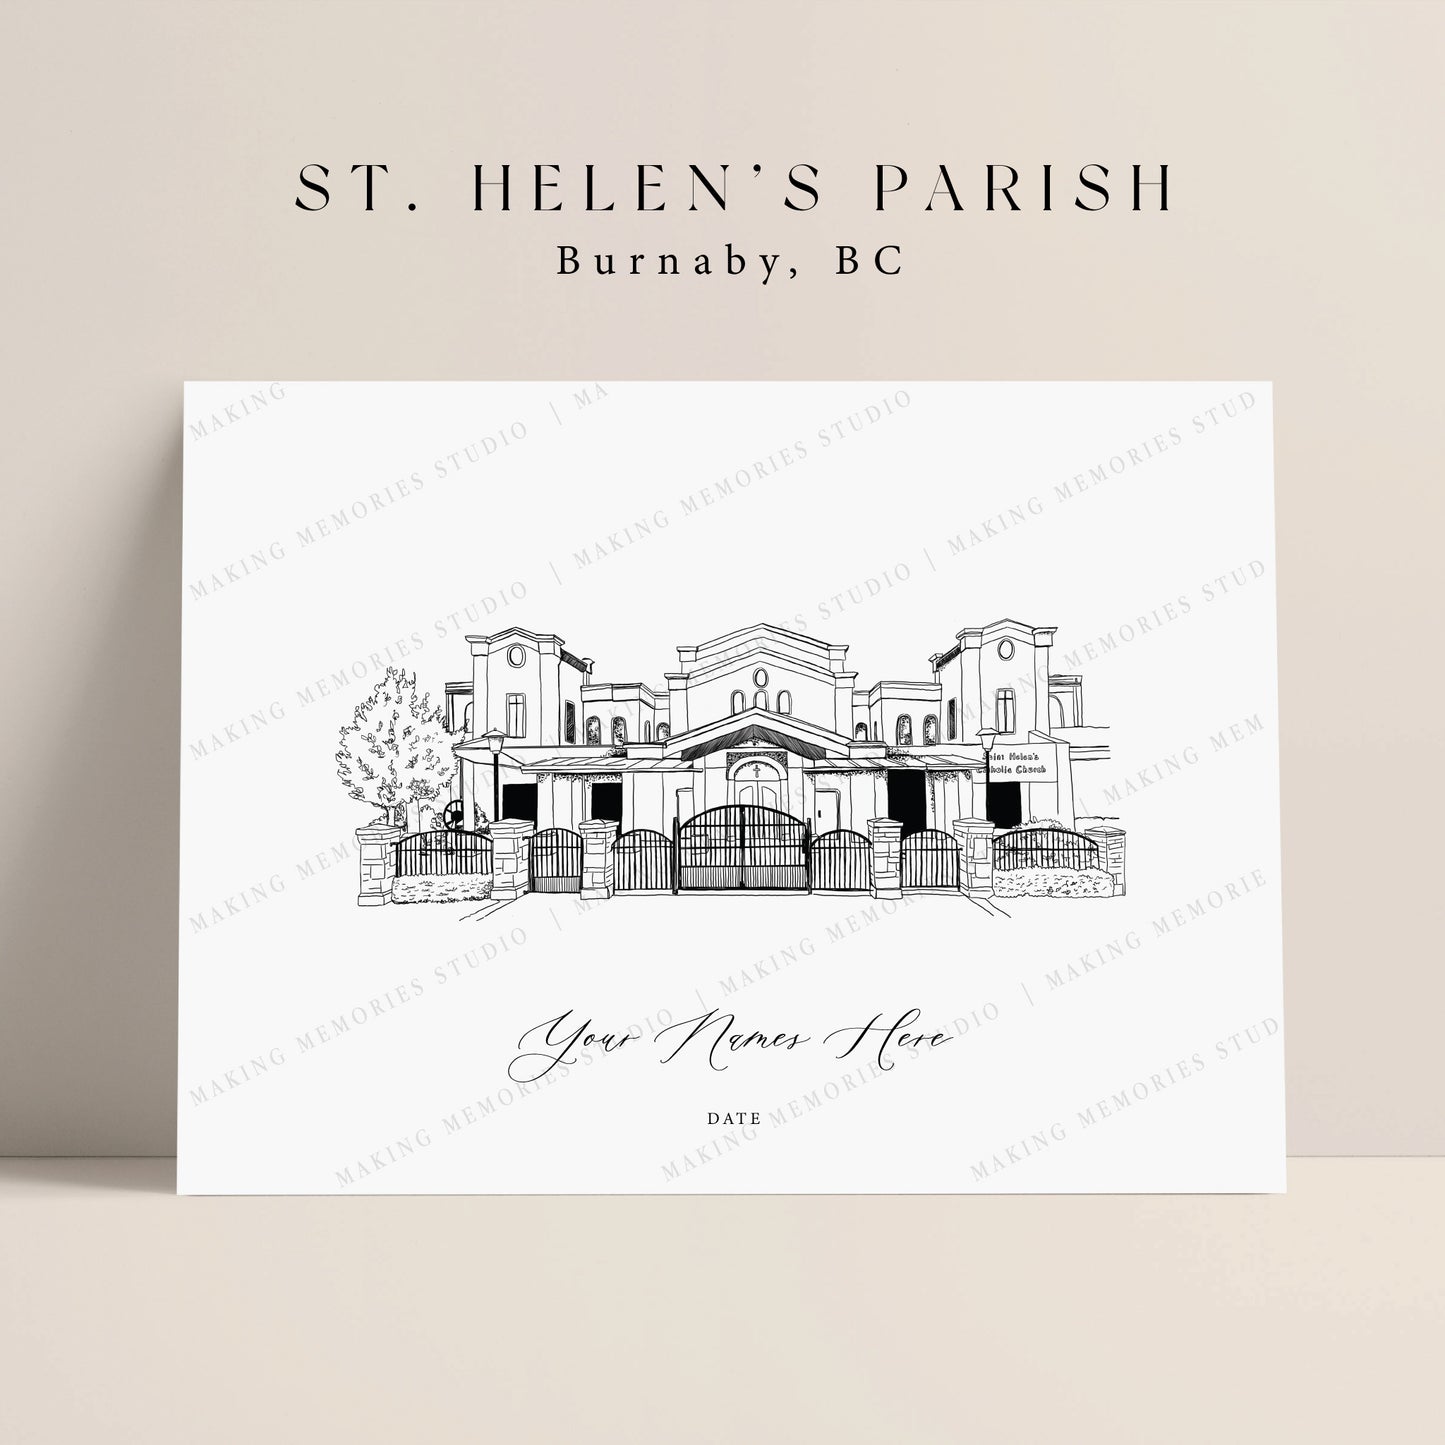 St. Helen's Parish 2